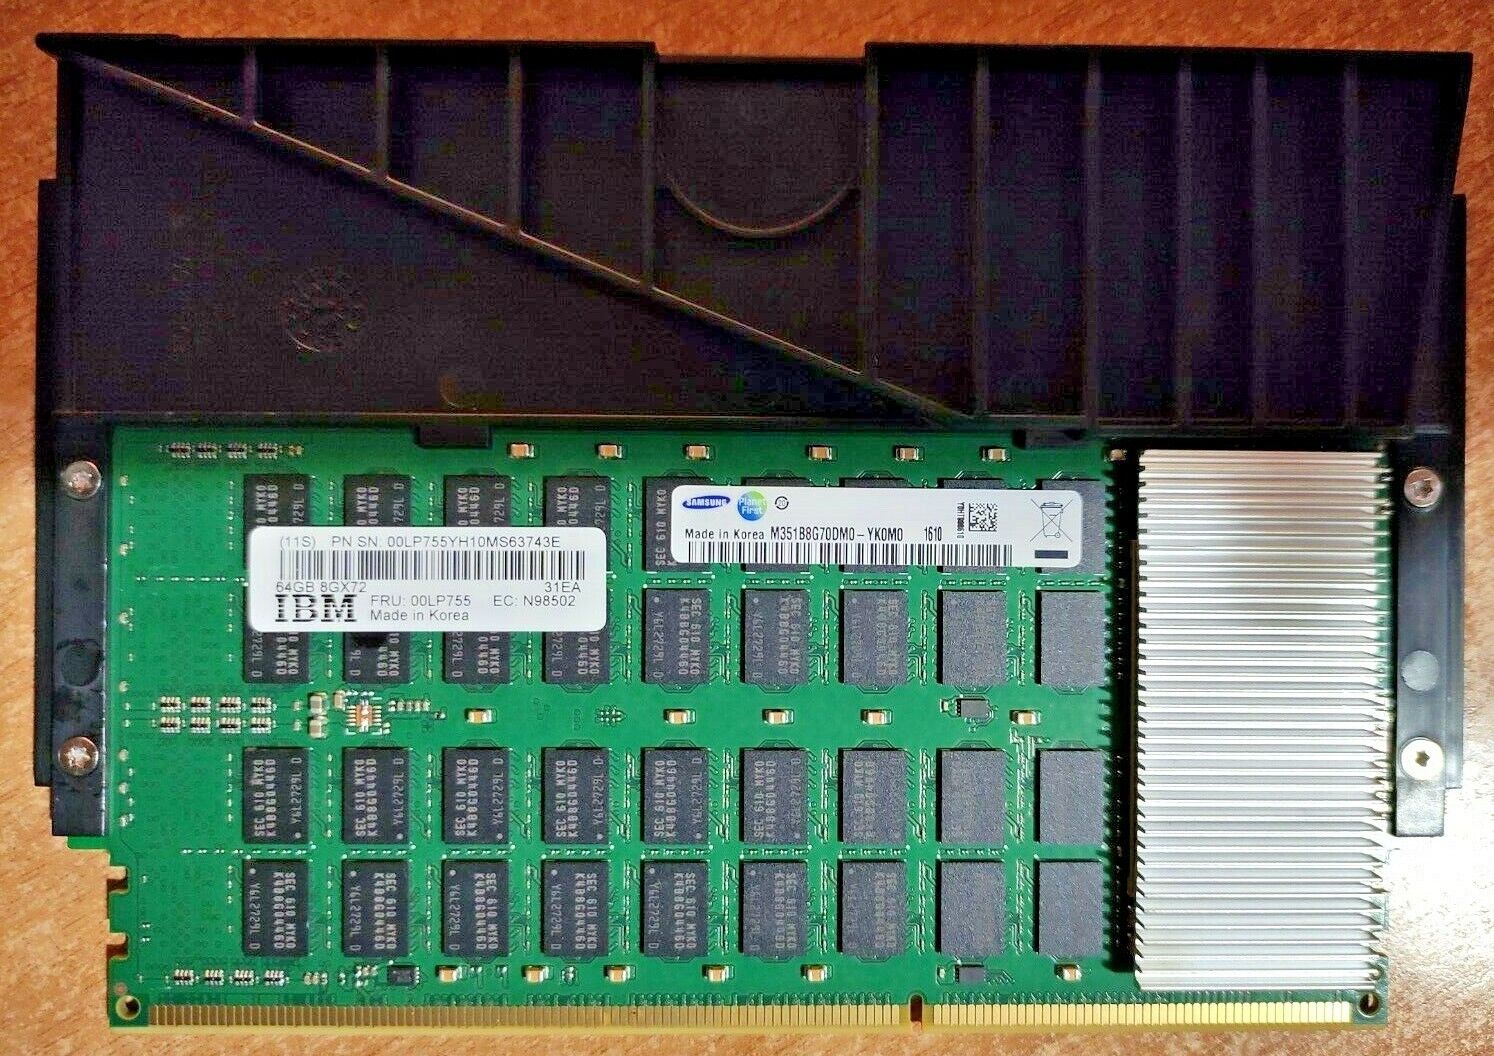 64GB IBM Power8 64GB Samsung M351B8G70DM0-YK0M1 DDR3 Memory